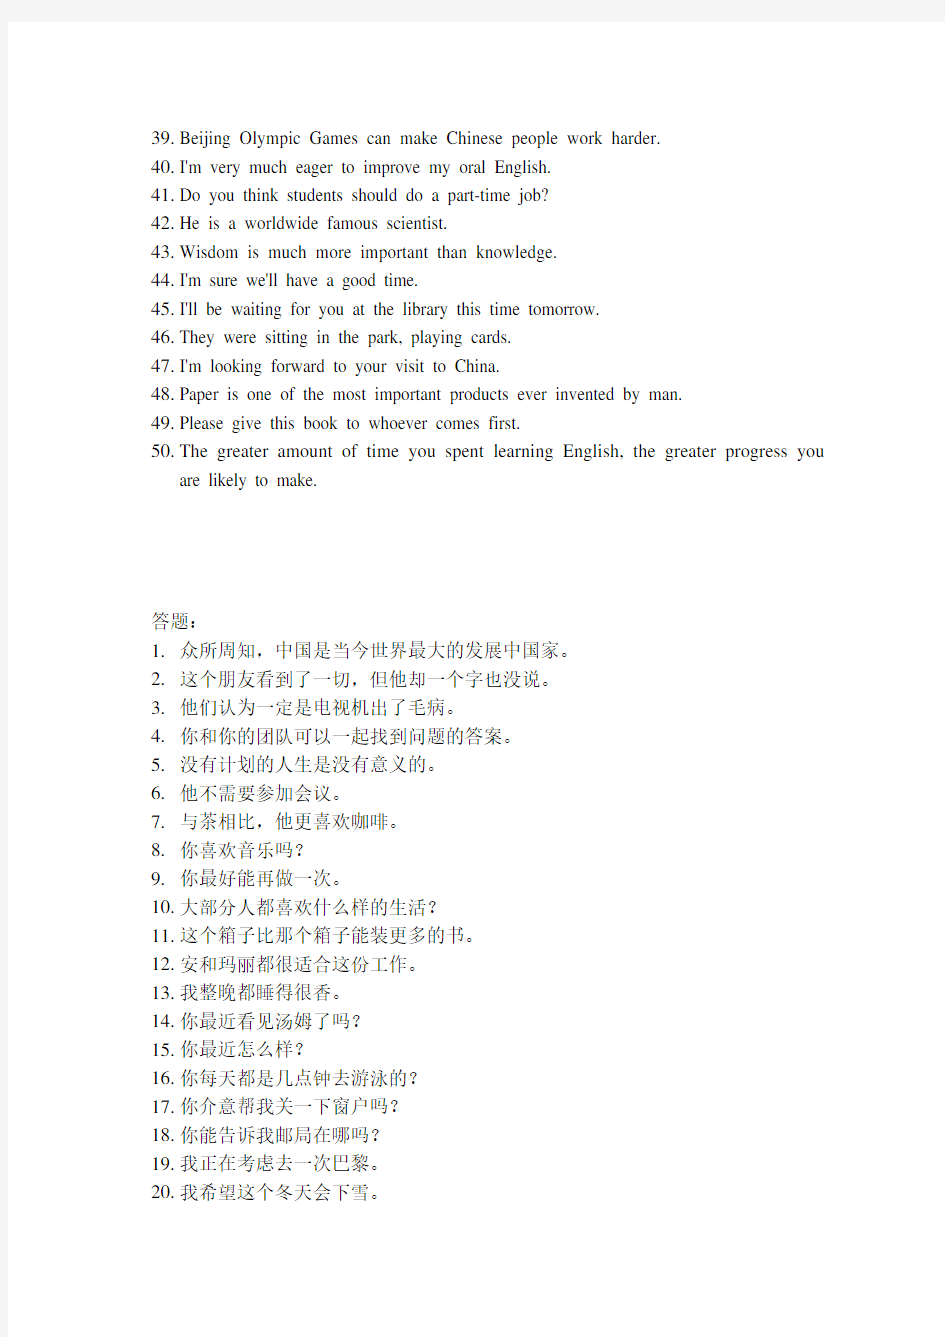 浙江大学2014远程教育英语(1)离线作业英译中50题答案